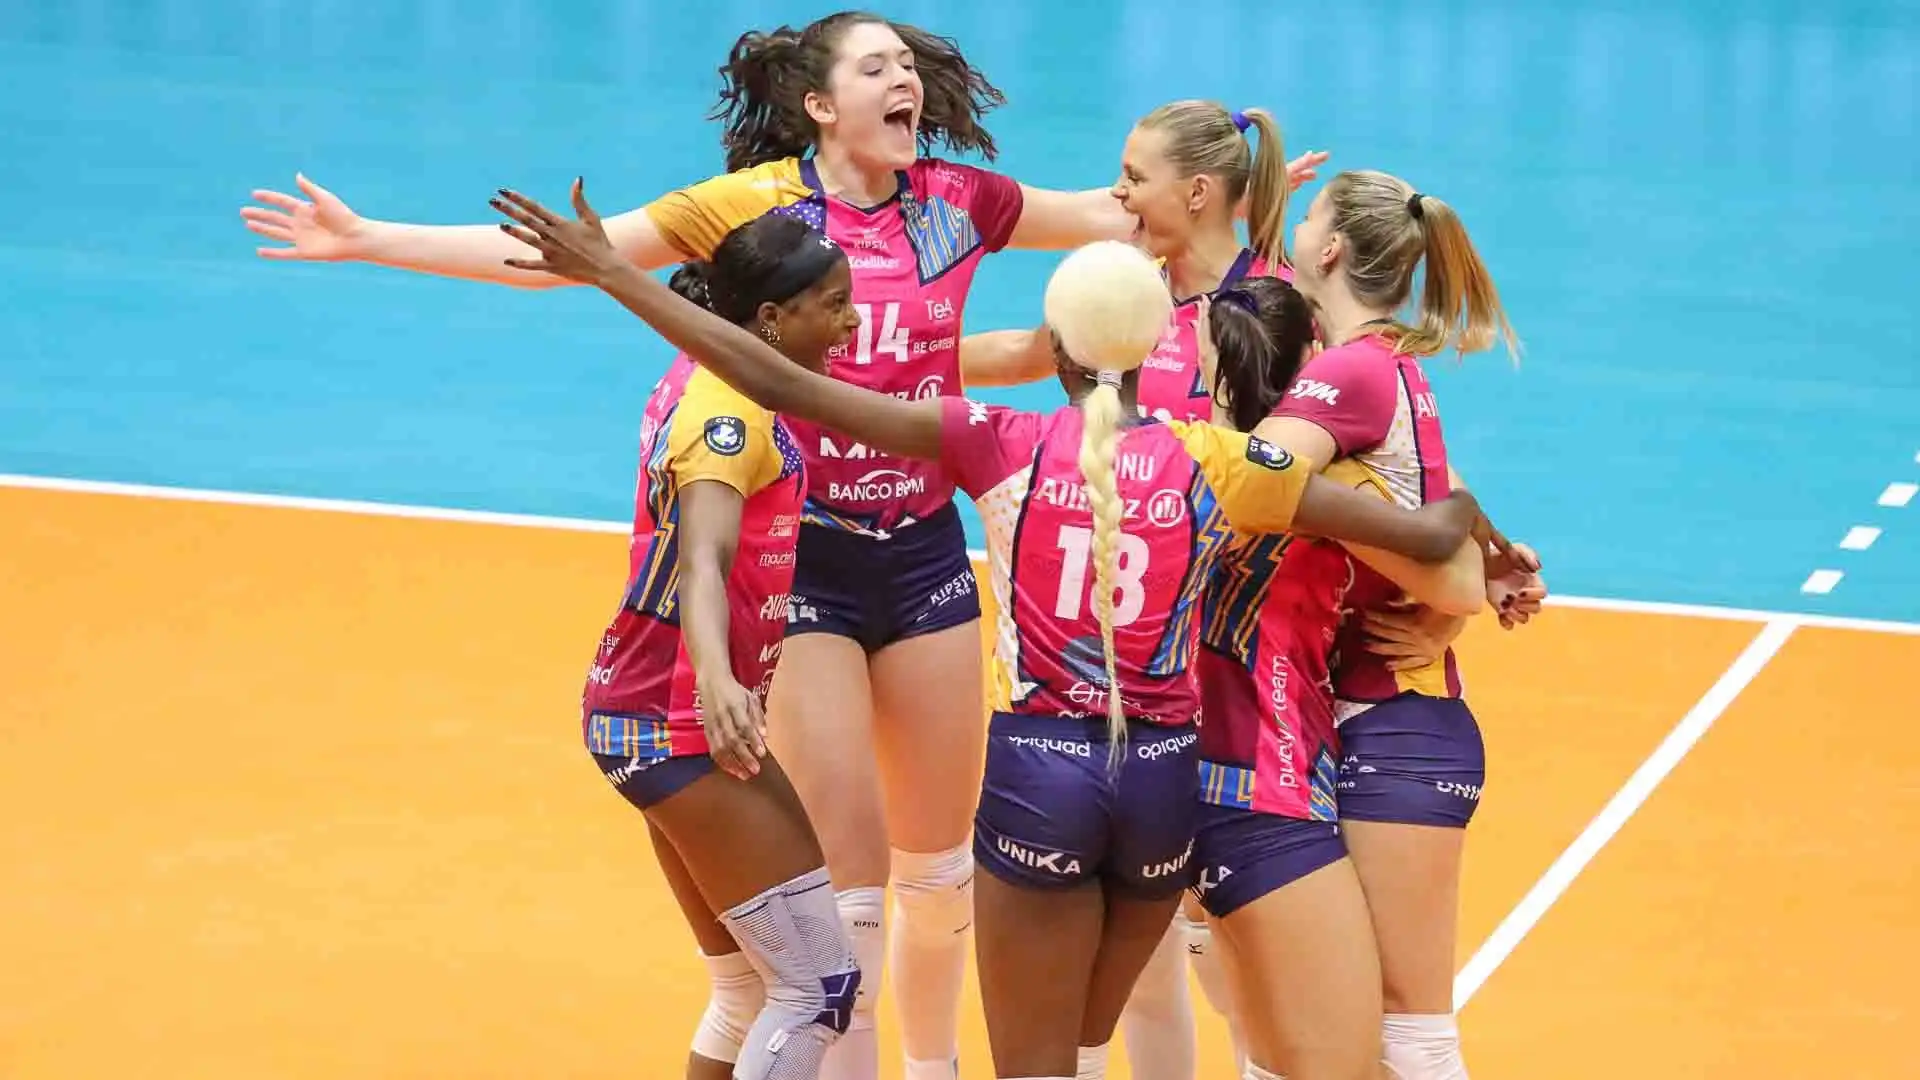 Presso l'Opiquad Arena di Monza, la formazione femminile del Consorzio Vero Volley ha superato con totale autorità il Jedinstvo Stara Pazova serbo con un secco 3-0 (25-15; 25-16; 25-20).